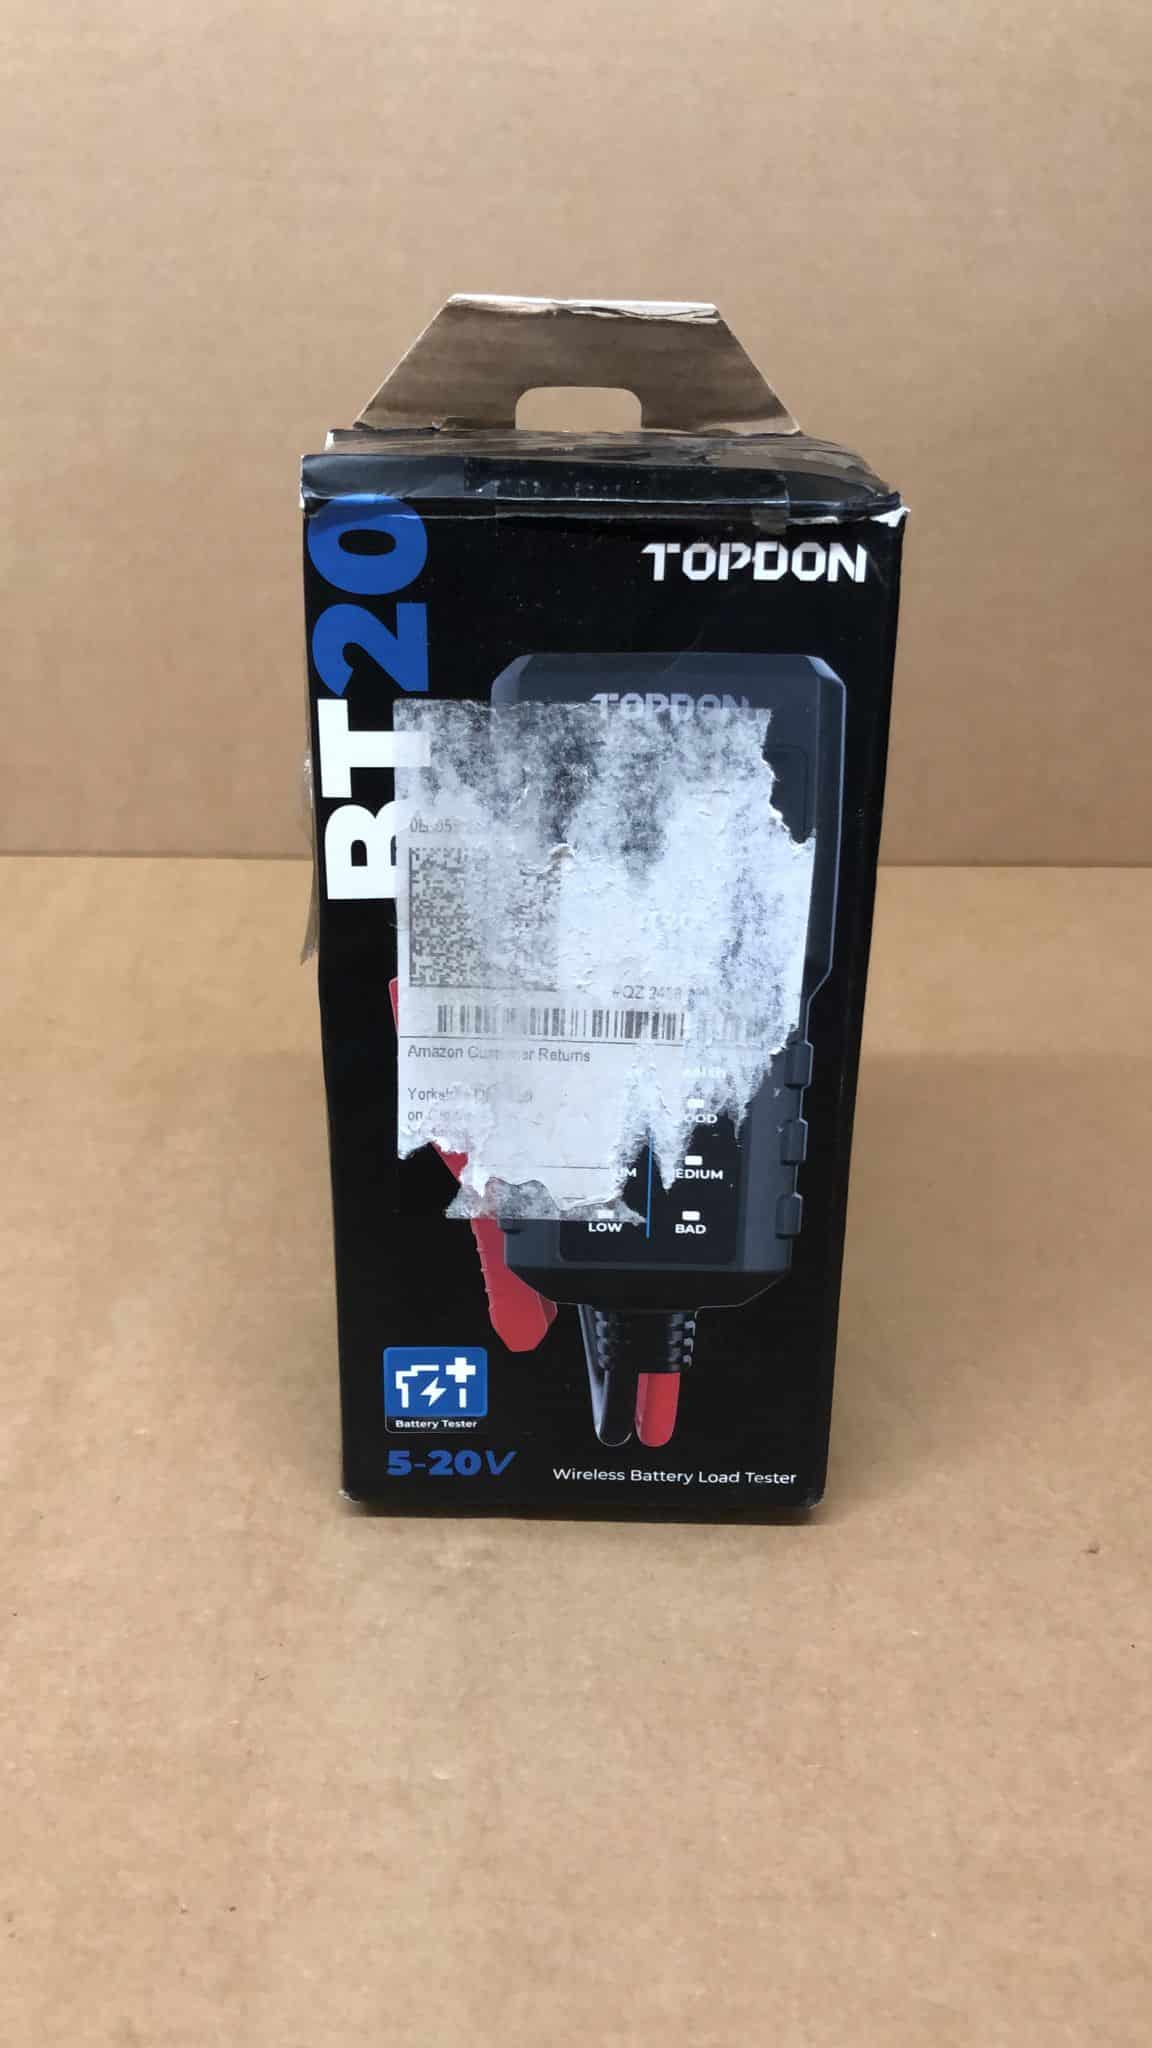 TOPDON Car Battery Tester BT20, 12V Battery Tester 1215